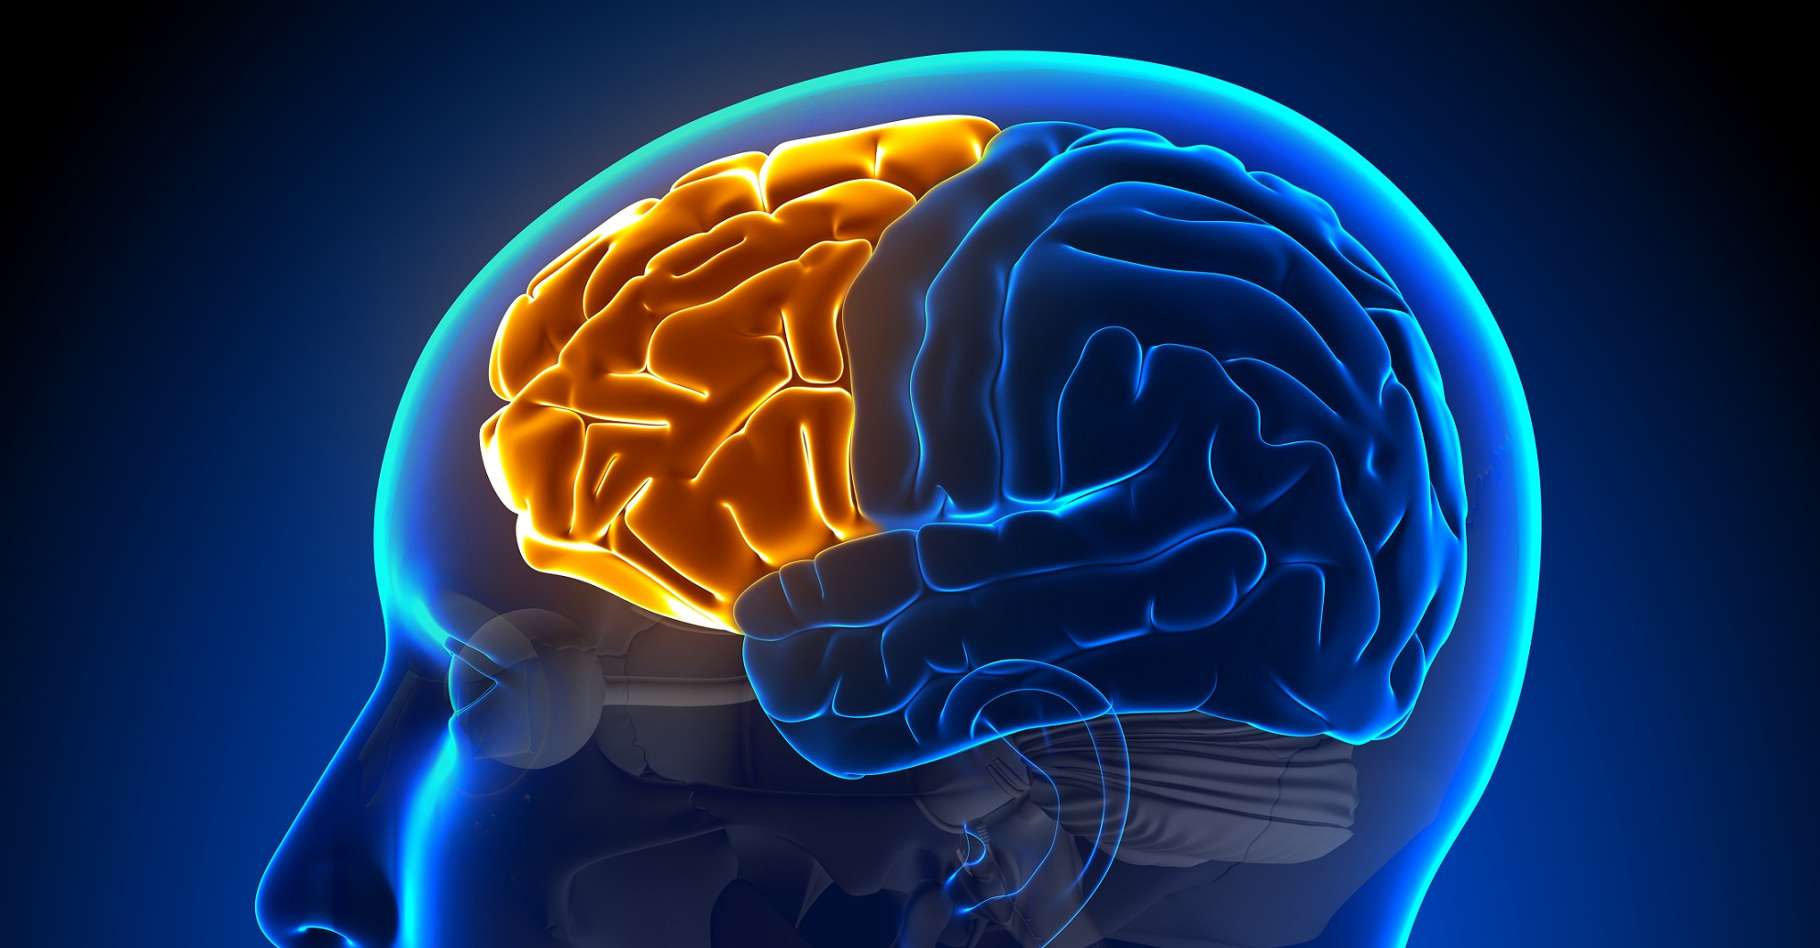 C'est quoi le cortex préfrontal ?